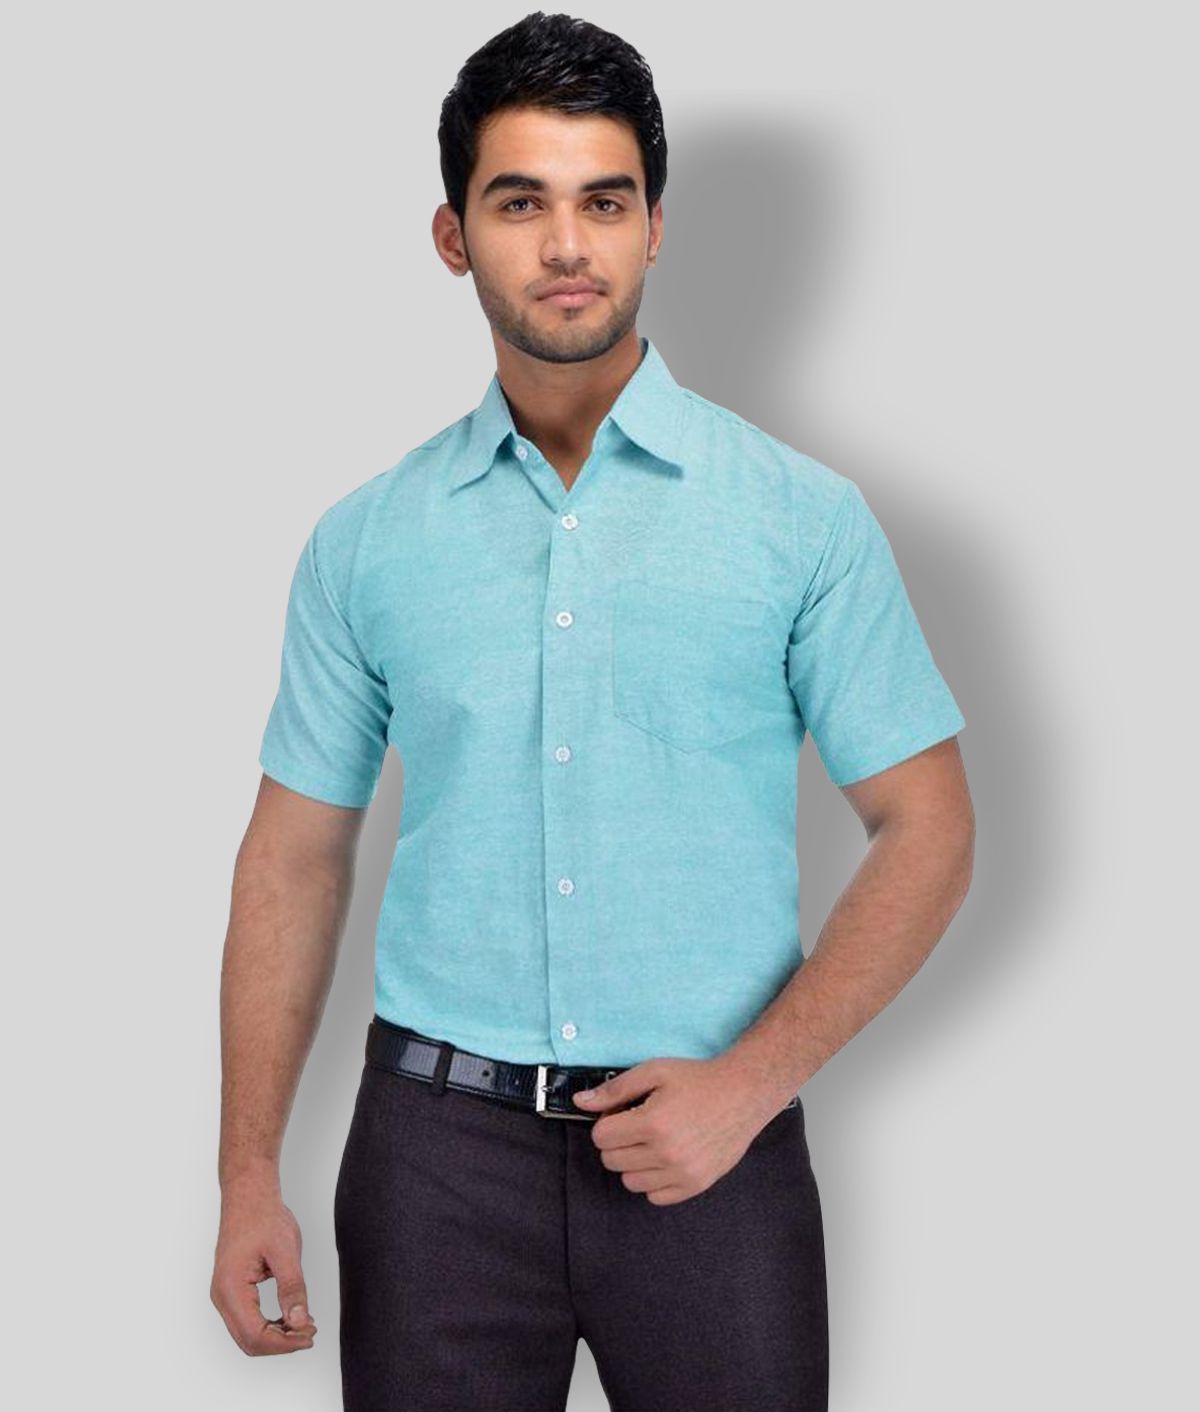     			DESHBANDHU DBK - Blue Cotton Regular Fit Men's Formal Shirt (Pack of 1)